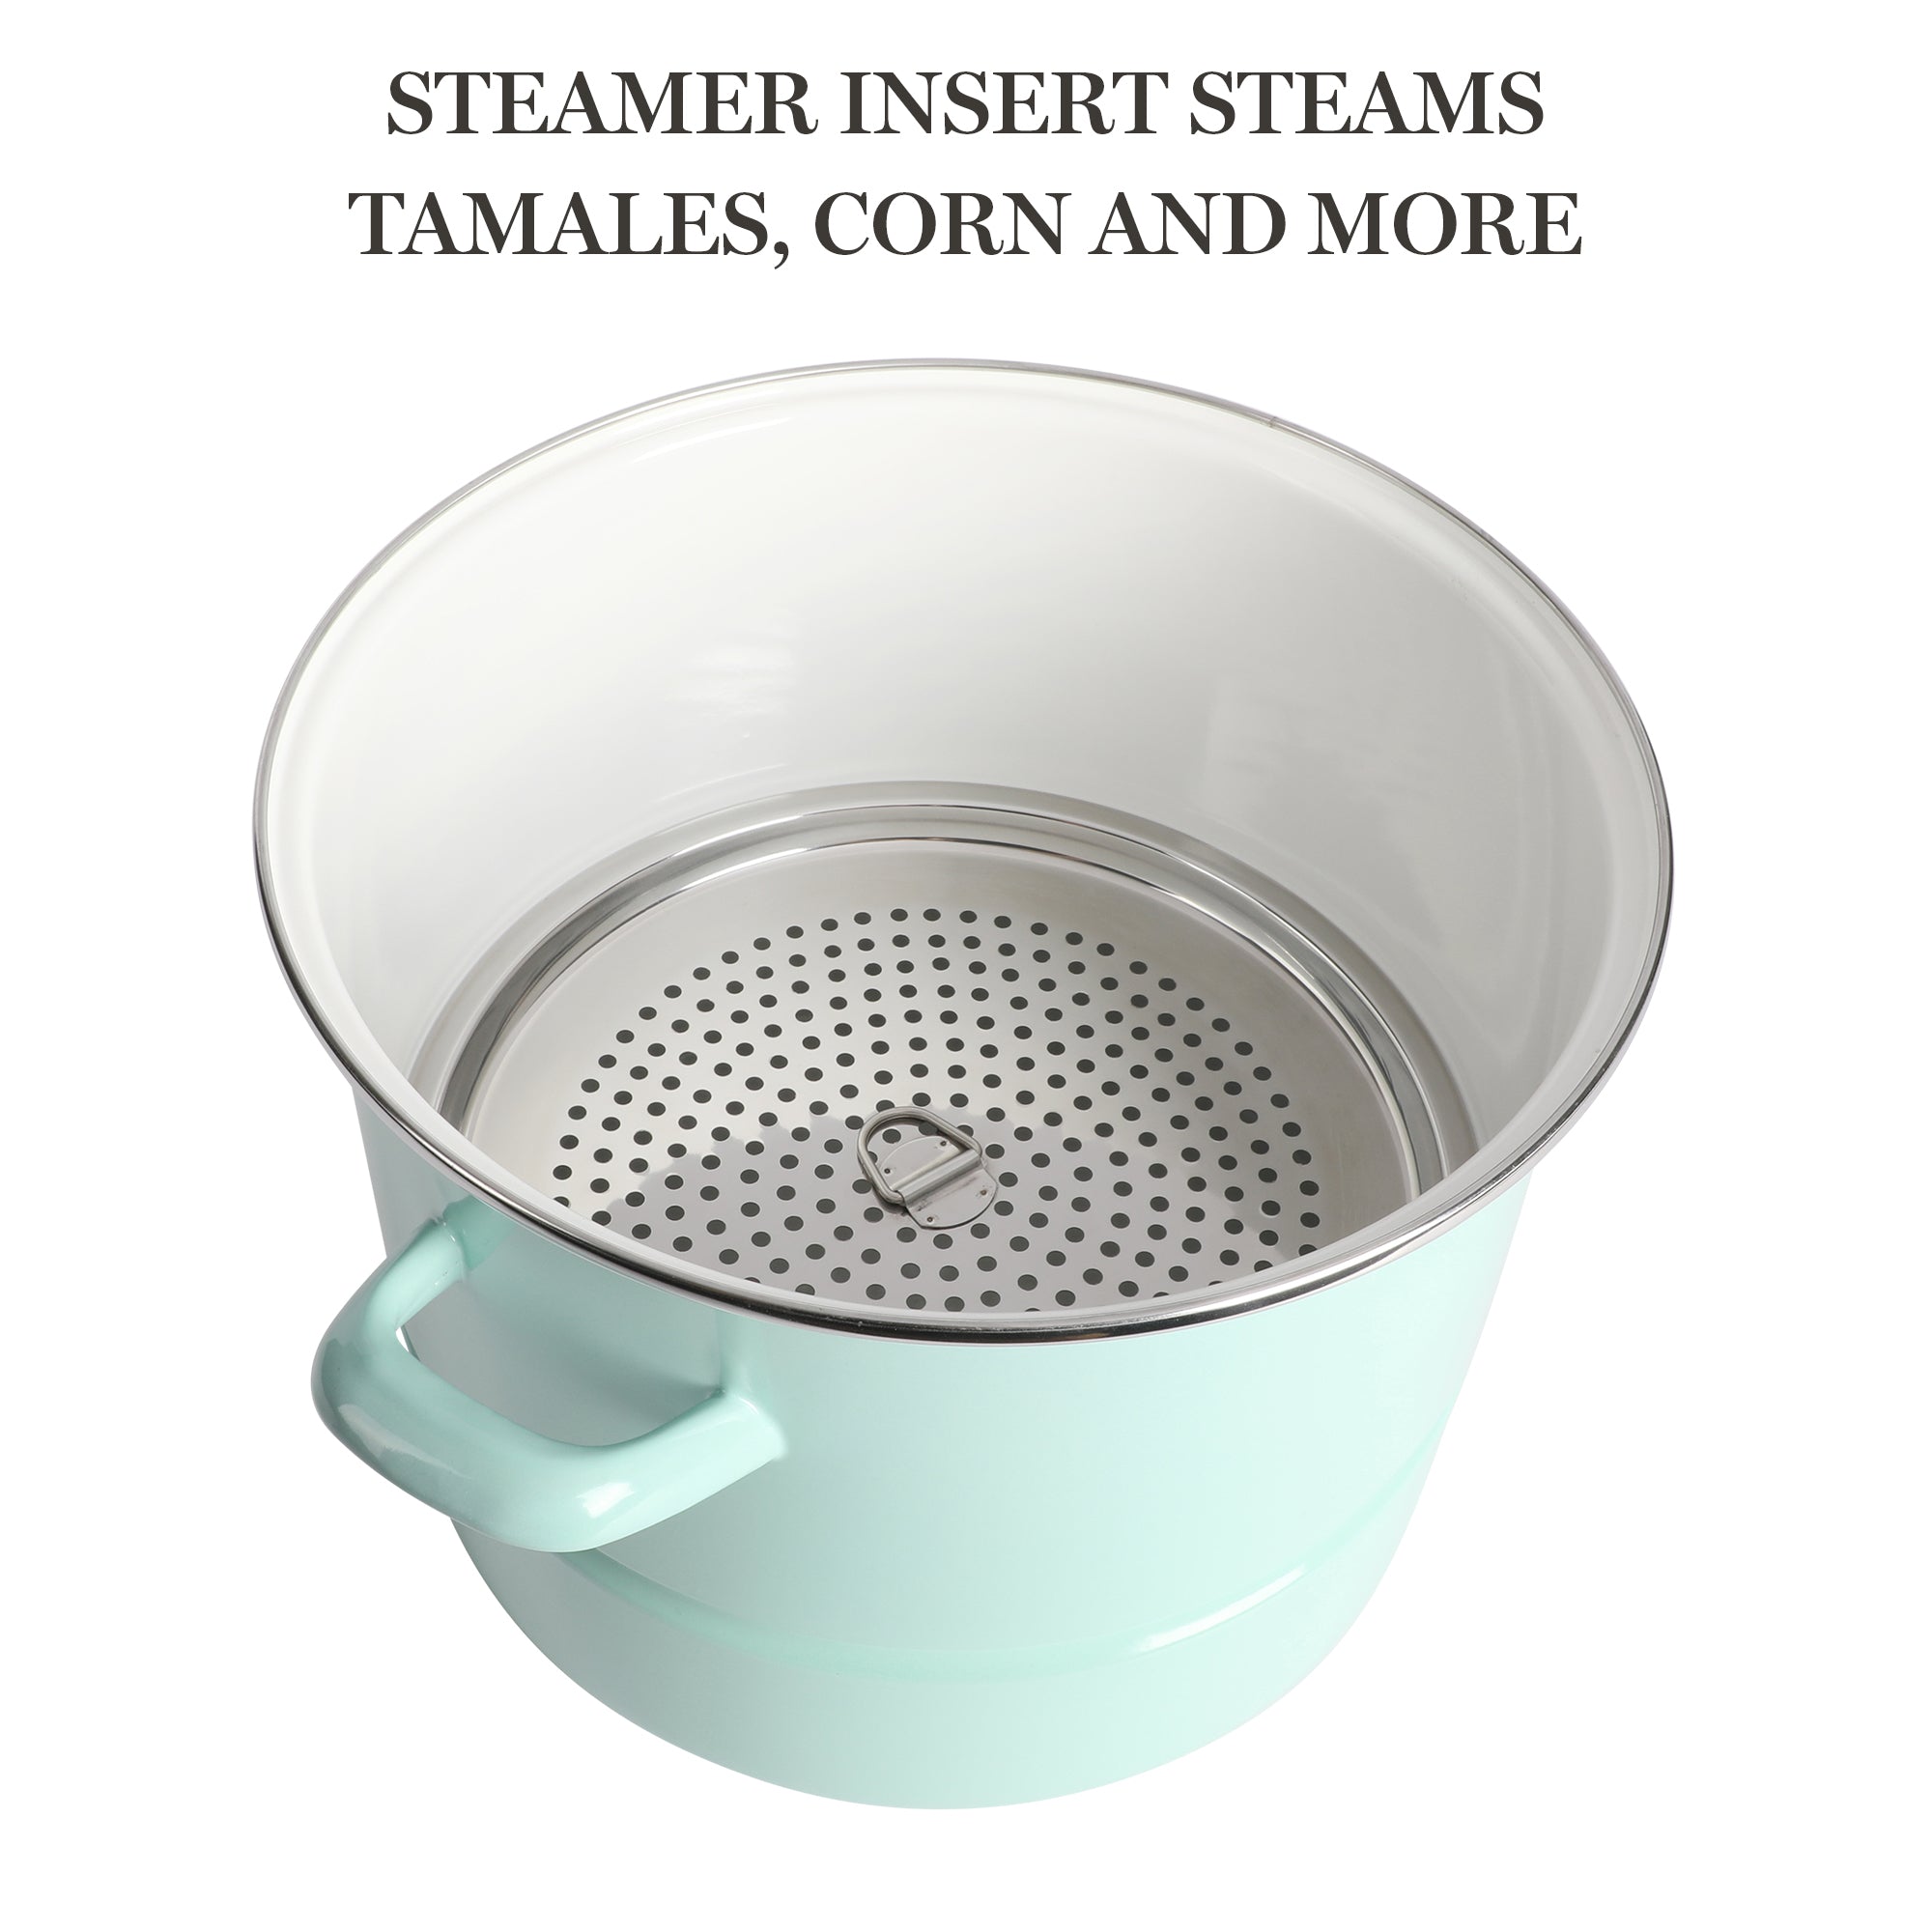 Stainless Steel Multi-Pot, Steaming Pot Insert